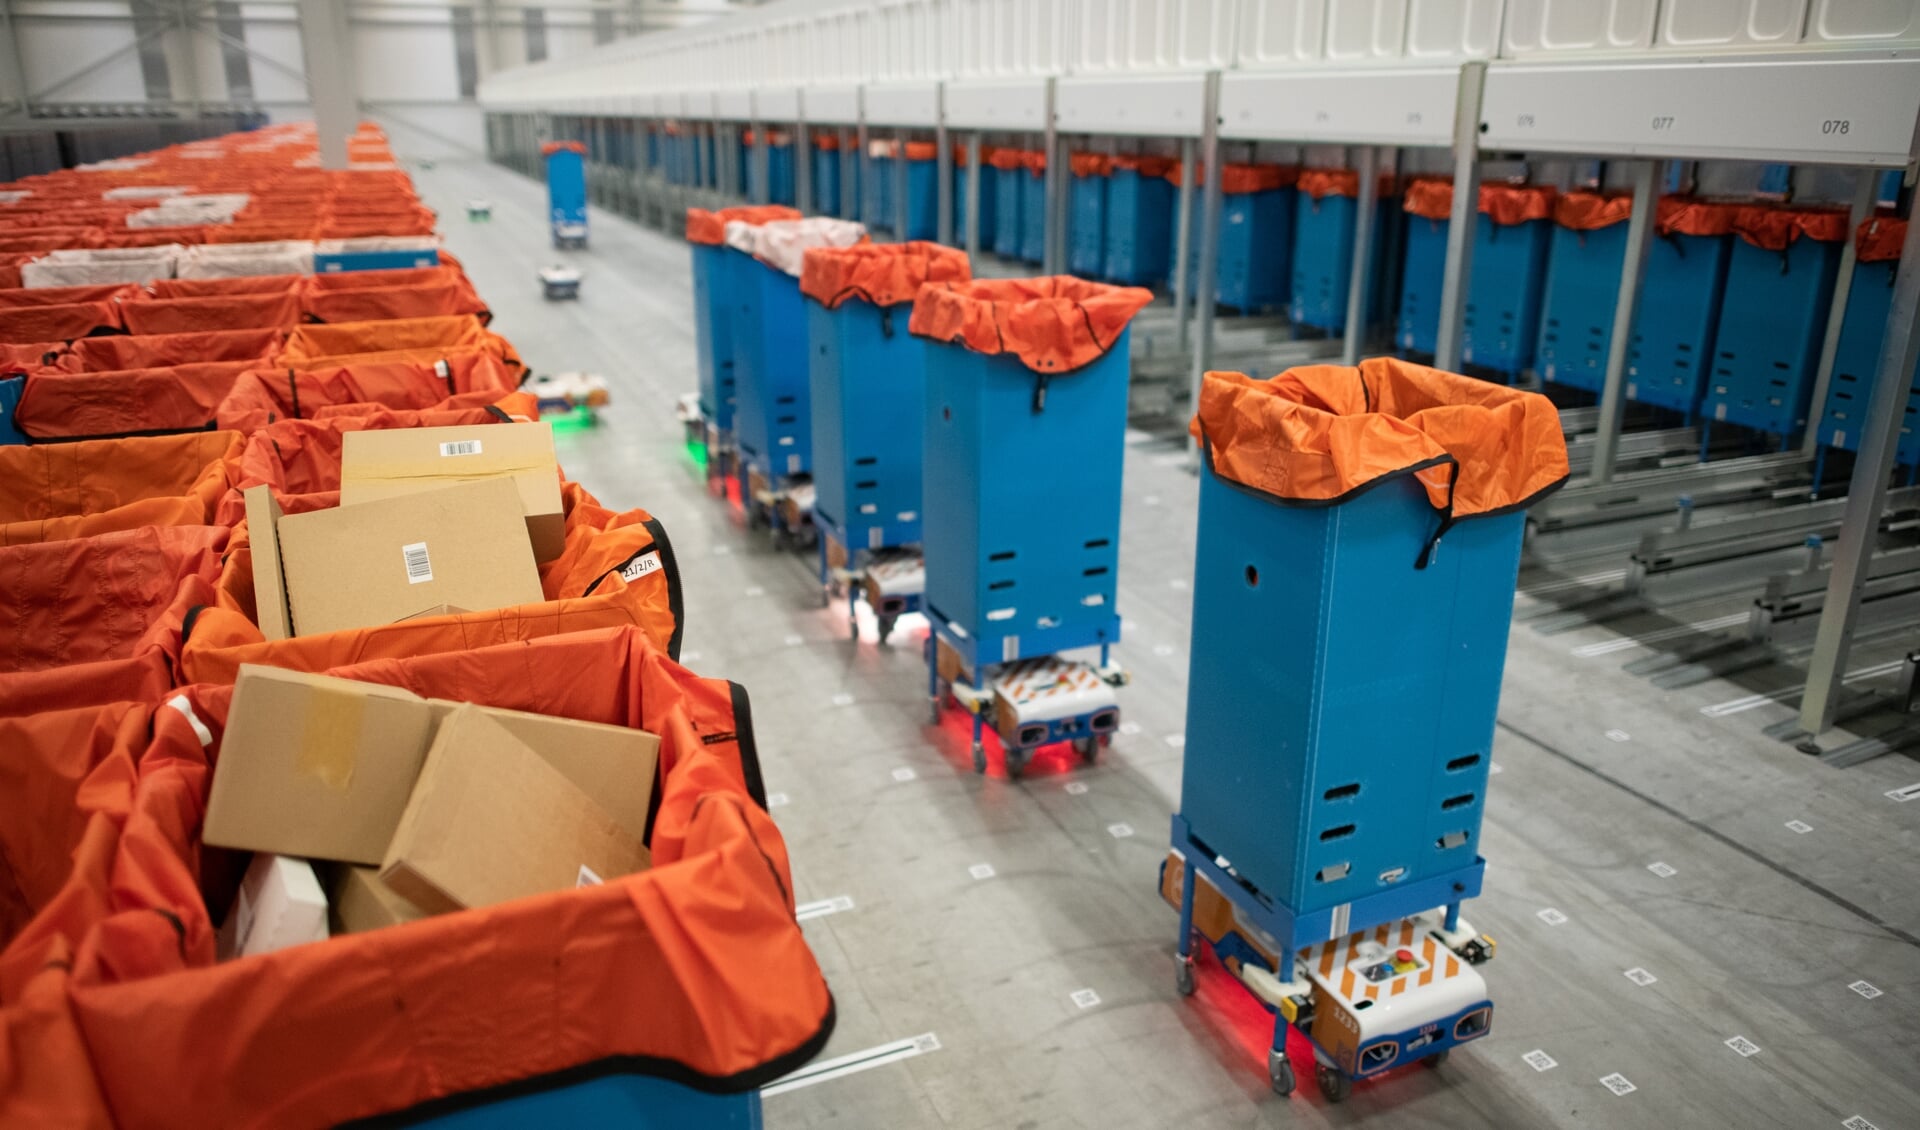 Het nieuwe sorteercentrum - voorzien van diverse robots - is volgens PostNL uniek in Europa en speciaal ingericht voor het sorteren en distribueren van kleine pakketten.  